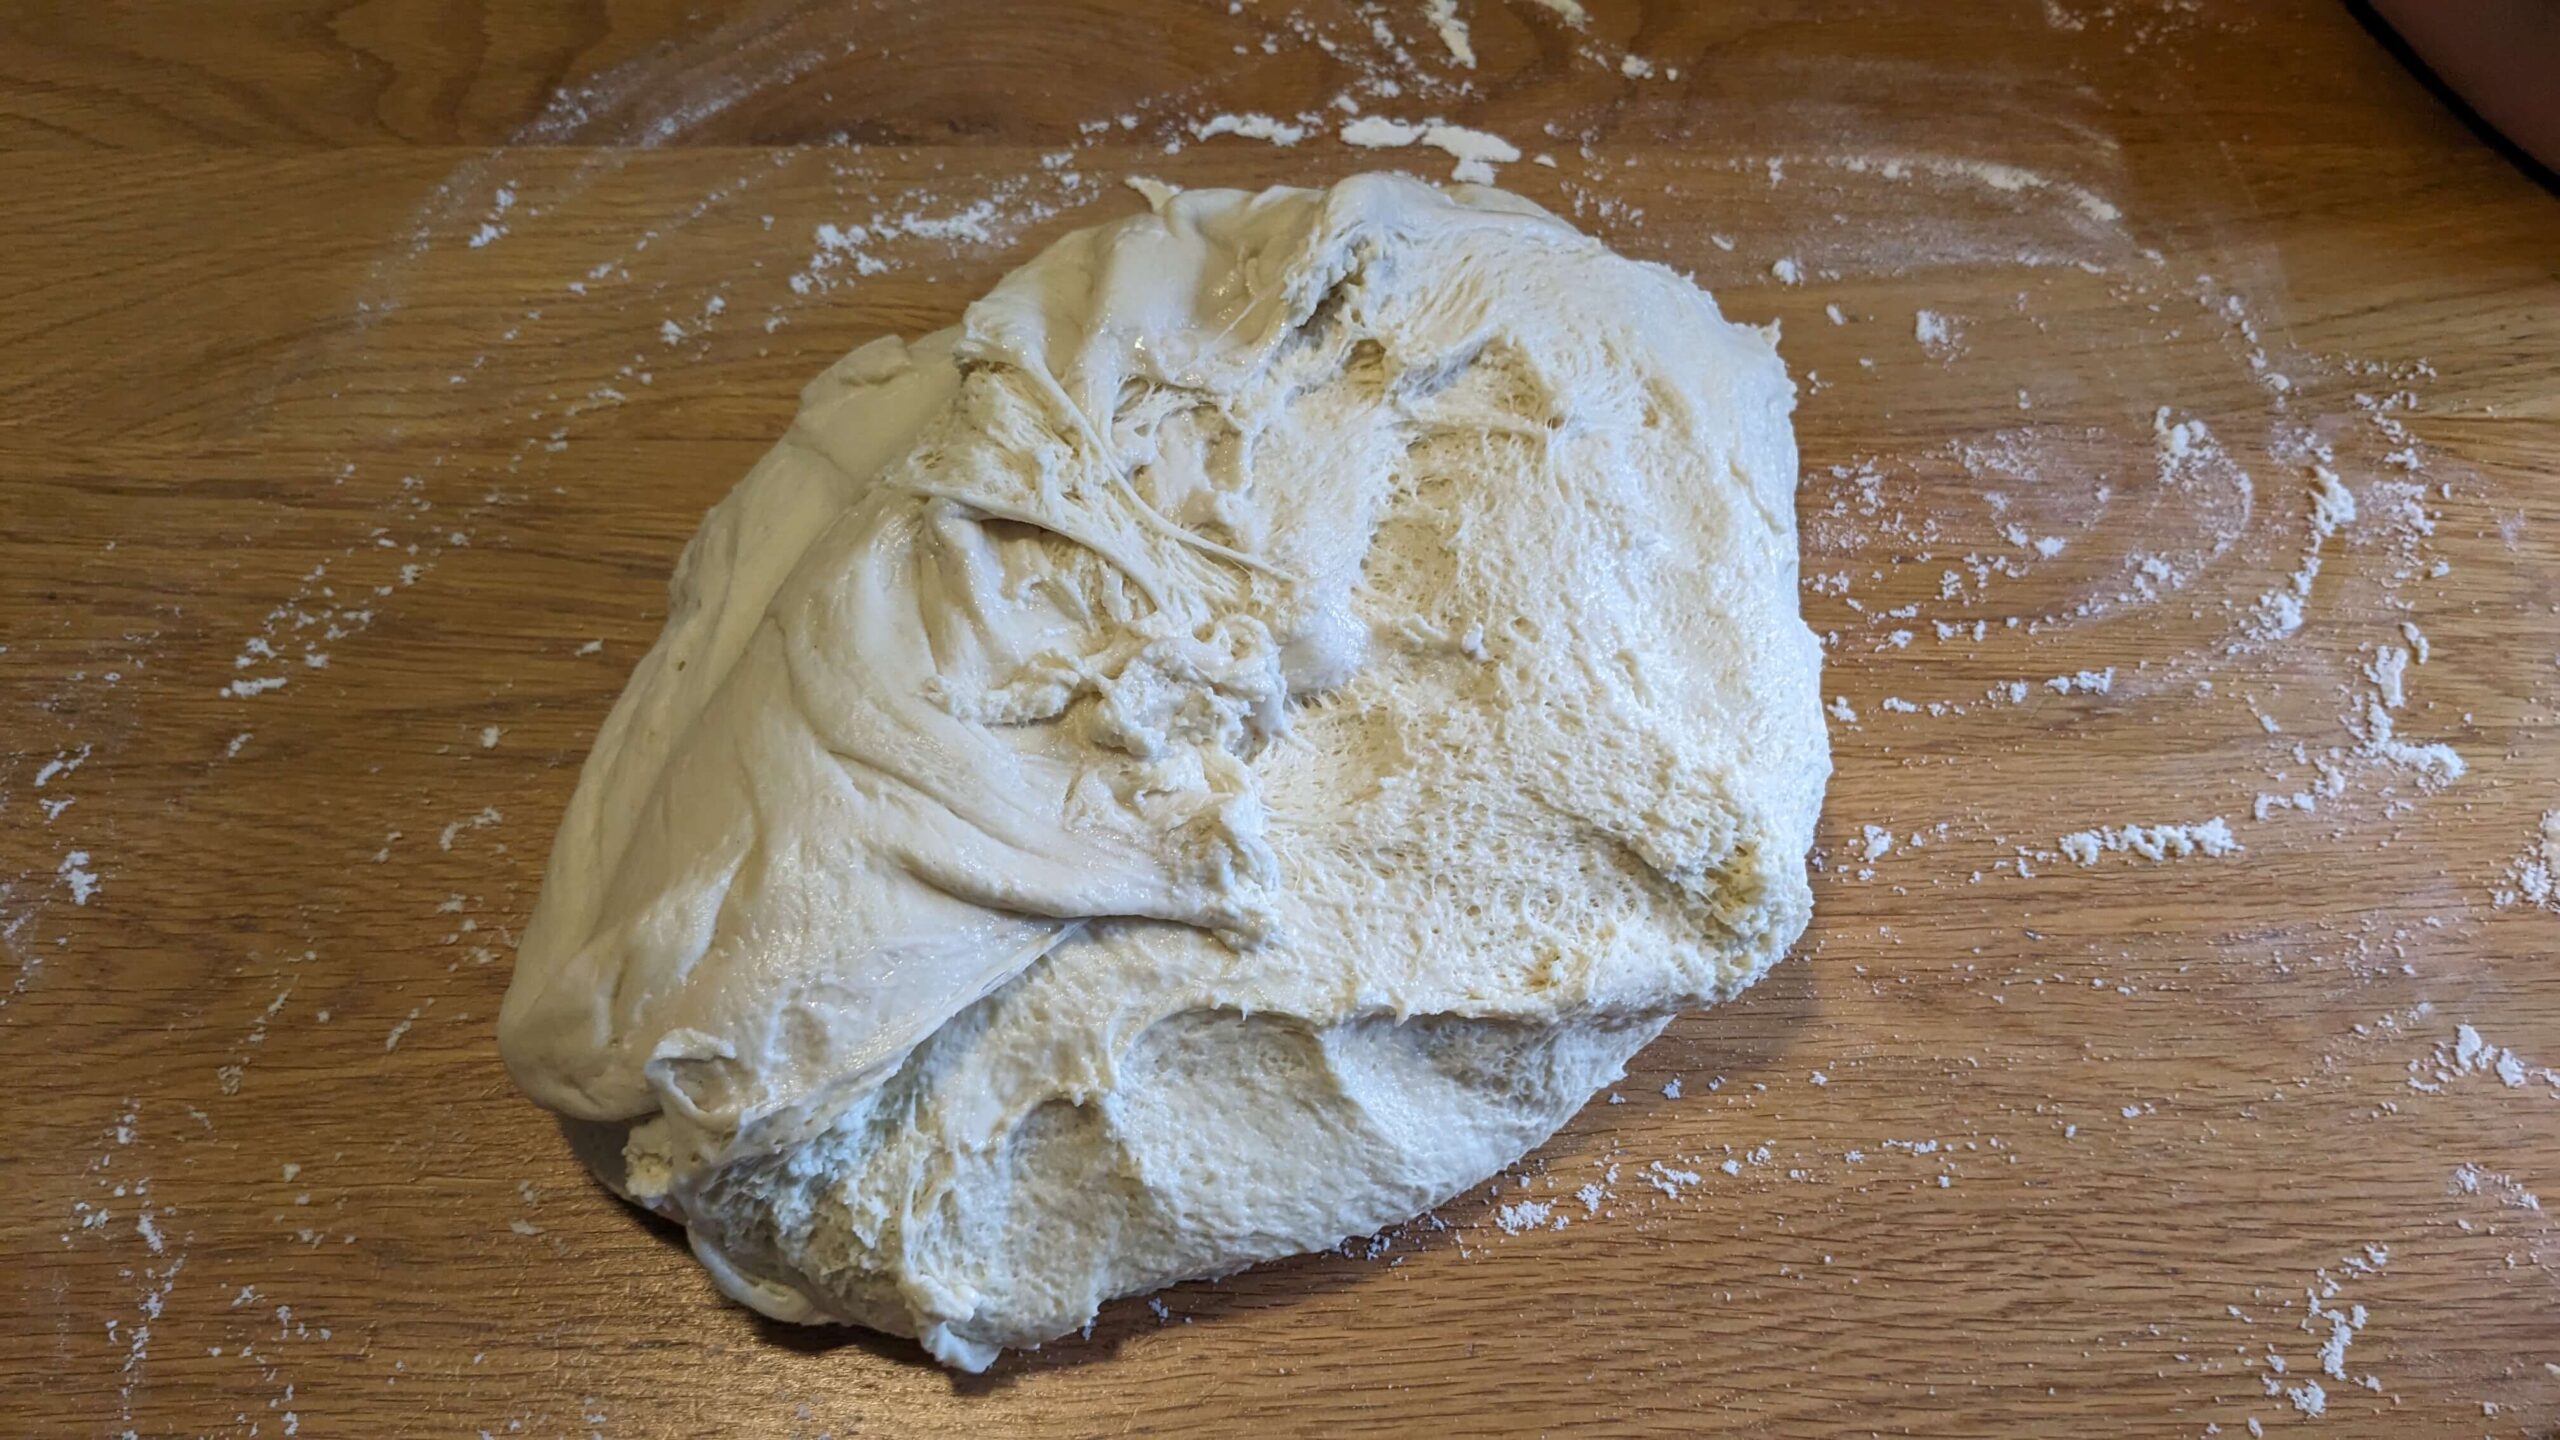 bread dough on a wooden countertop